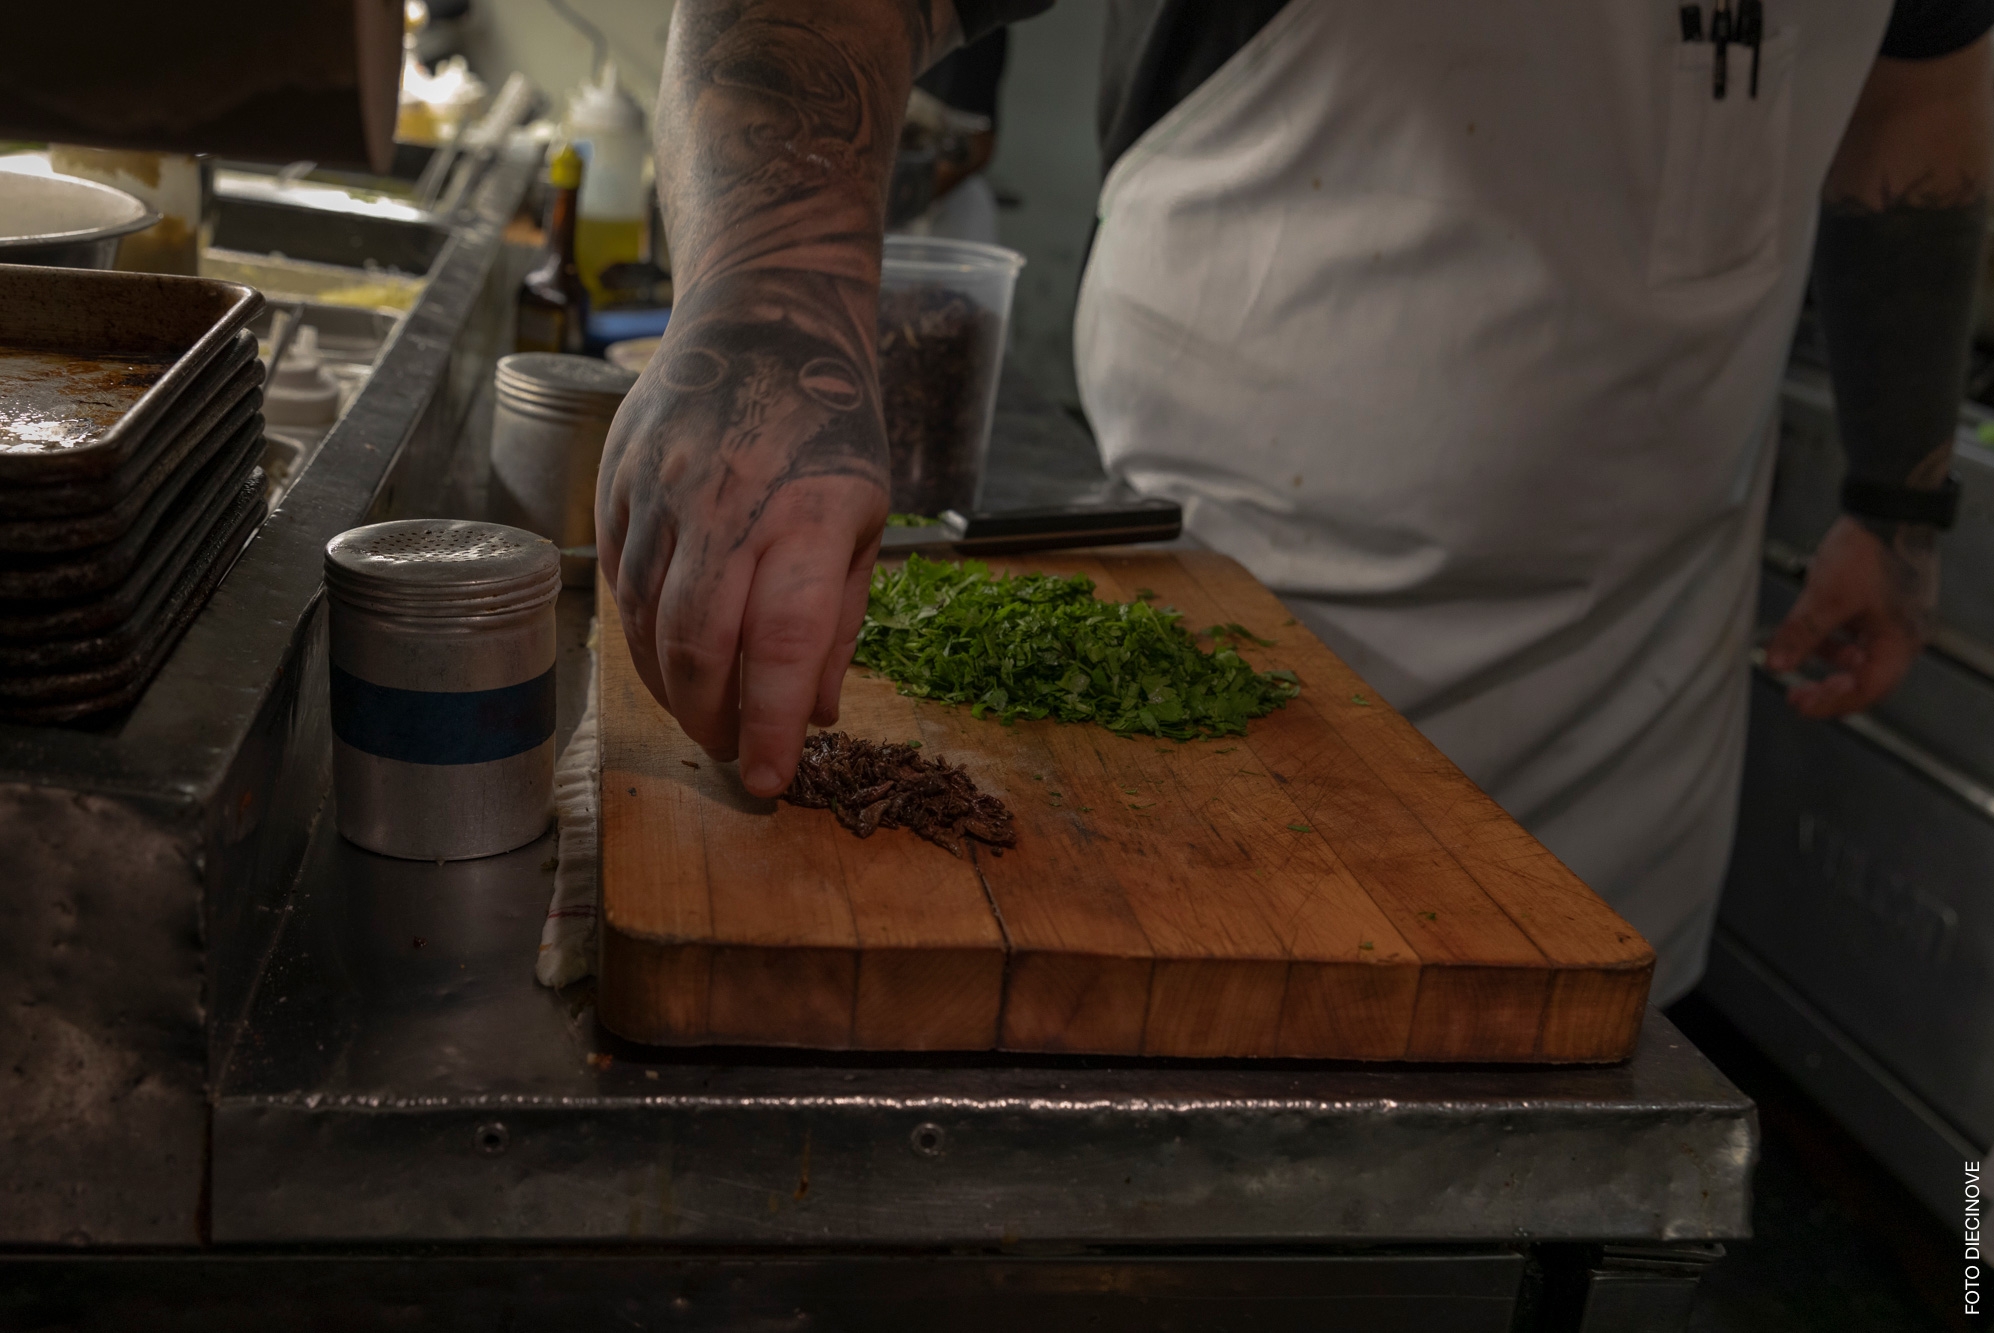 Chef chopping preparing food on a cutting board